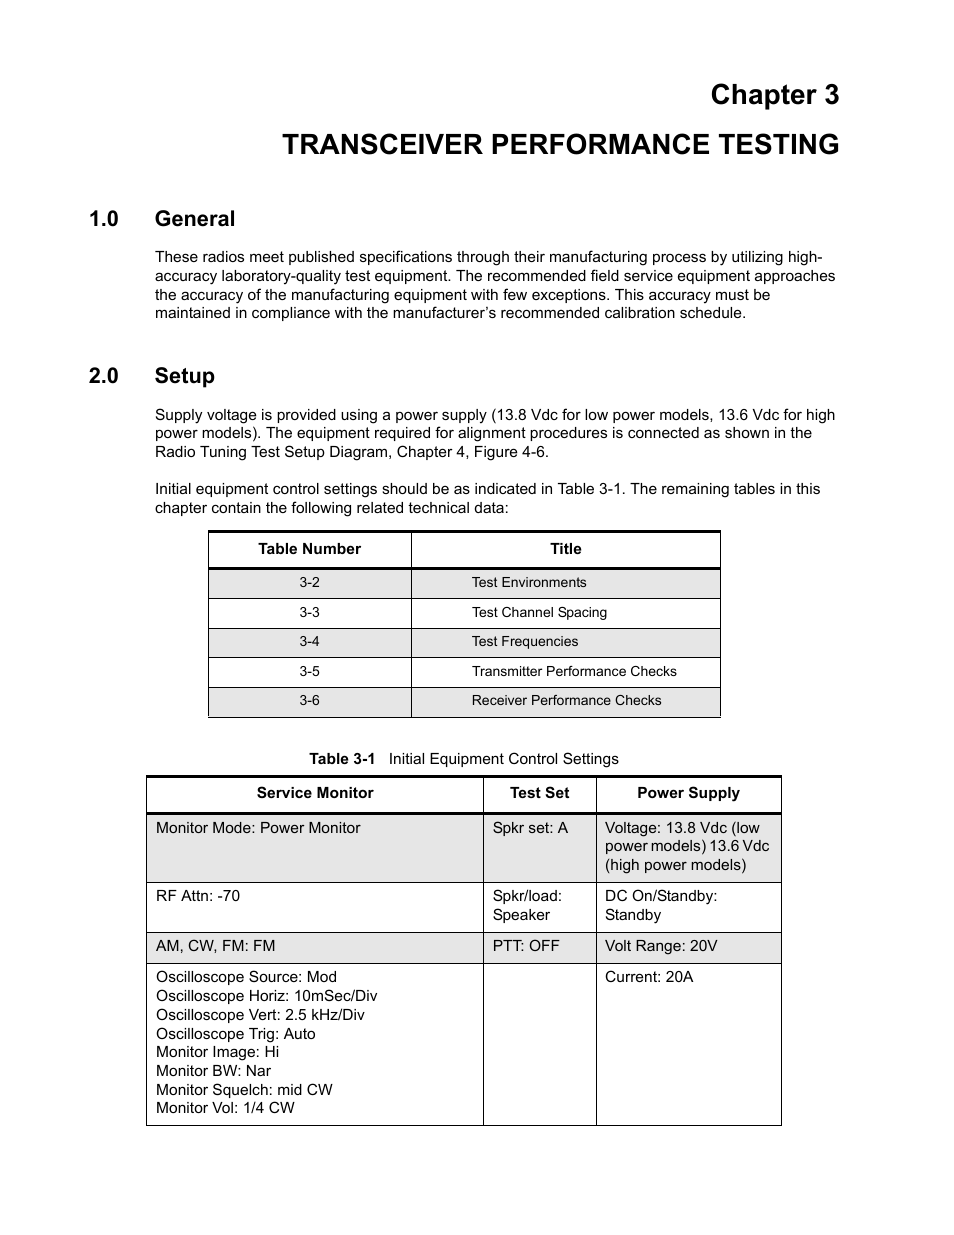 Chapter 3 transceiver performance testing, 0 general, 0 setup | Nikon RADIUS CM200 User Manual | Page 37 / 70